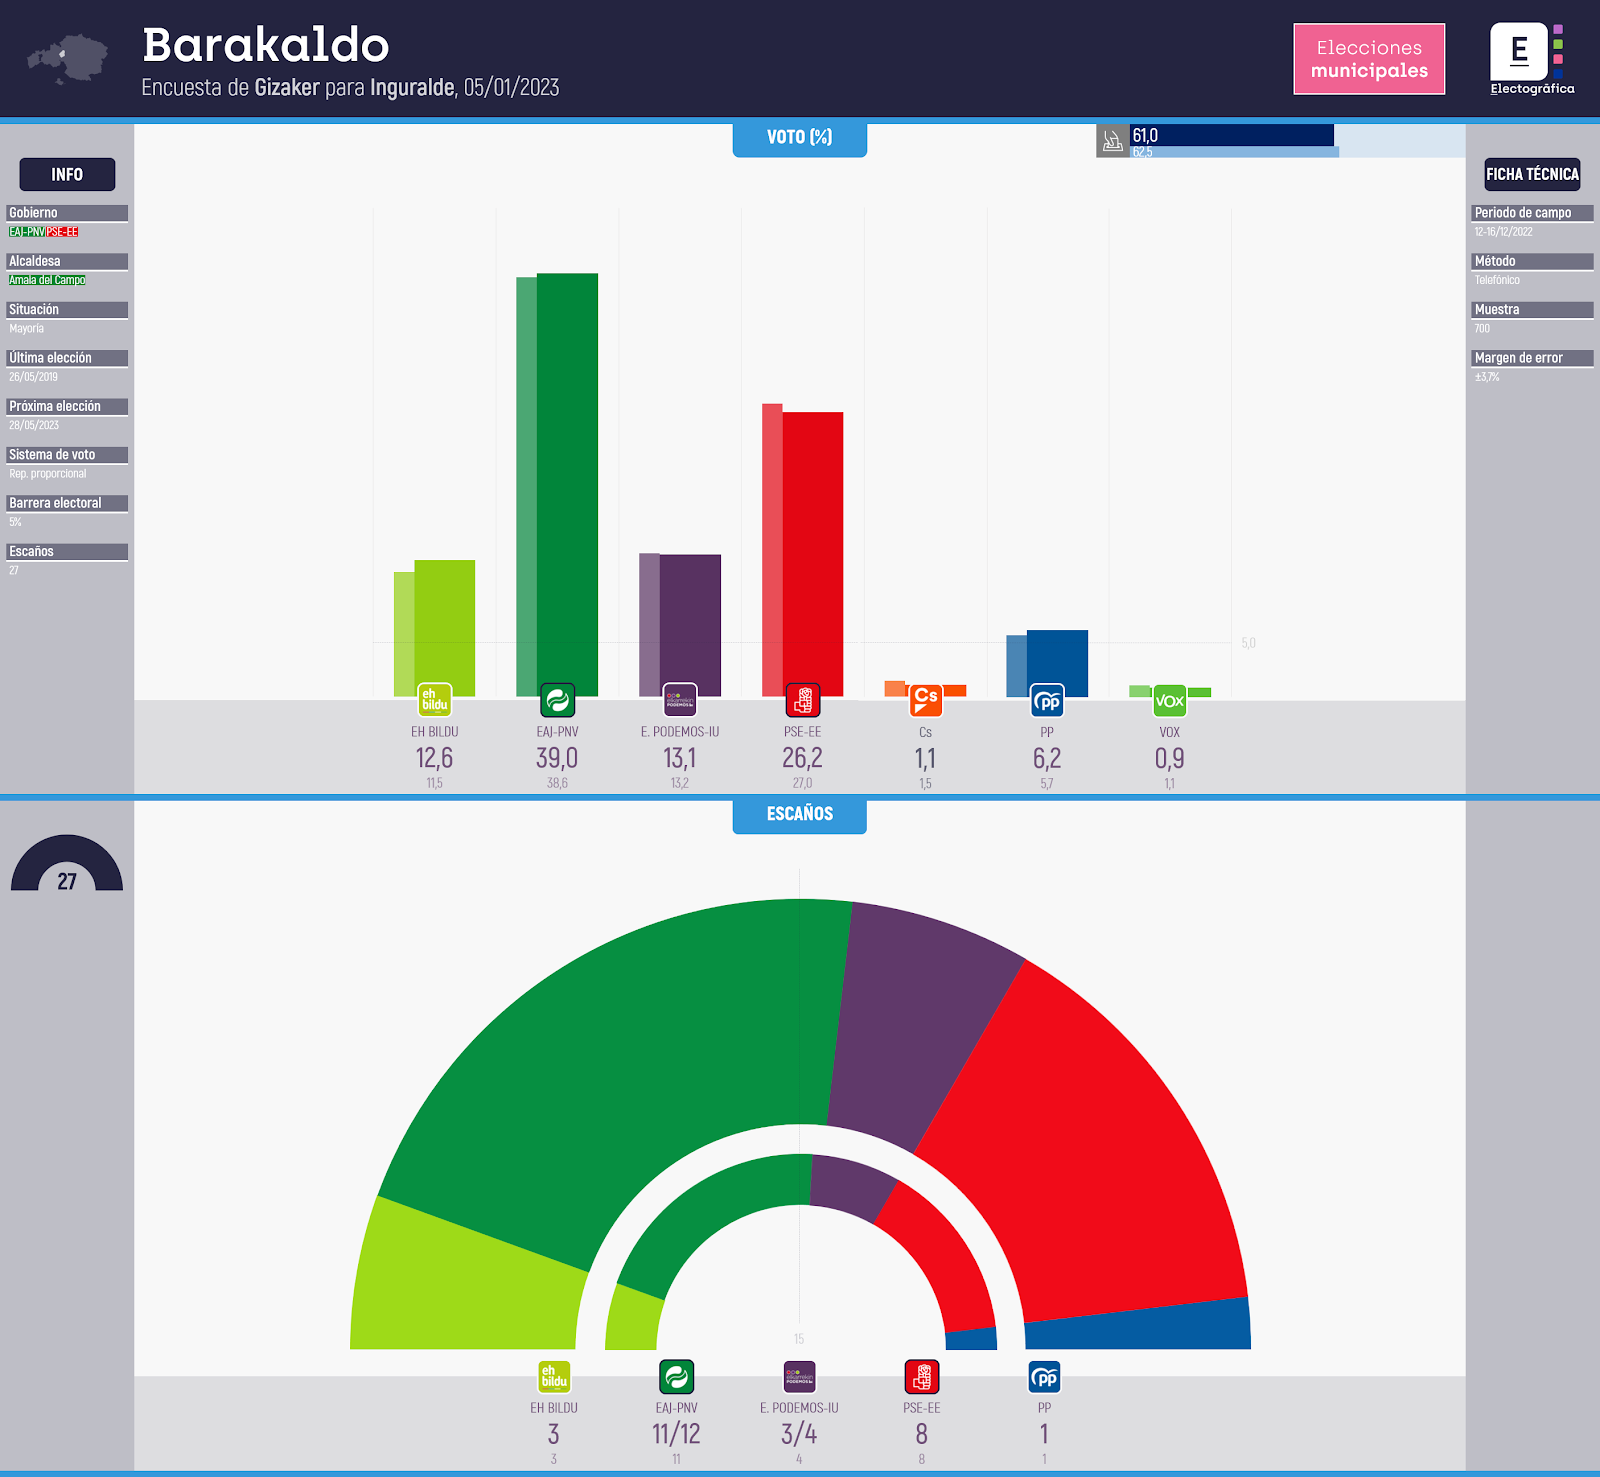 Gráfico de la encuesta para elecciones municipales en Barakaldo realizada por Gizaker para Inguralde, 05/01/2023